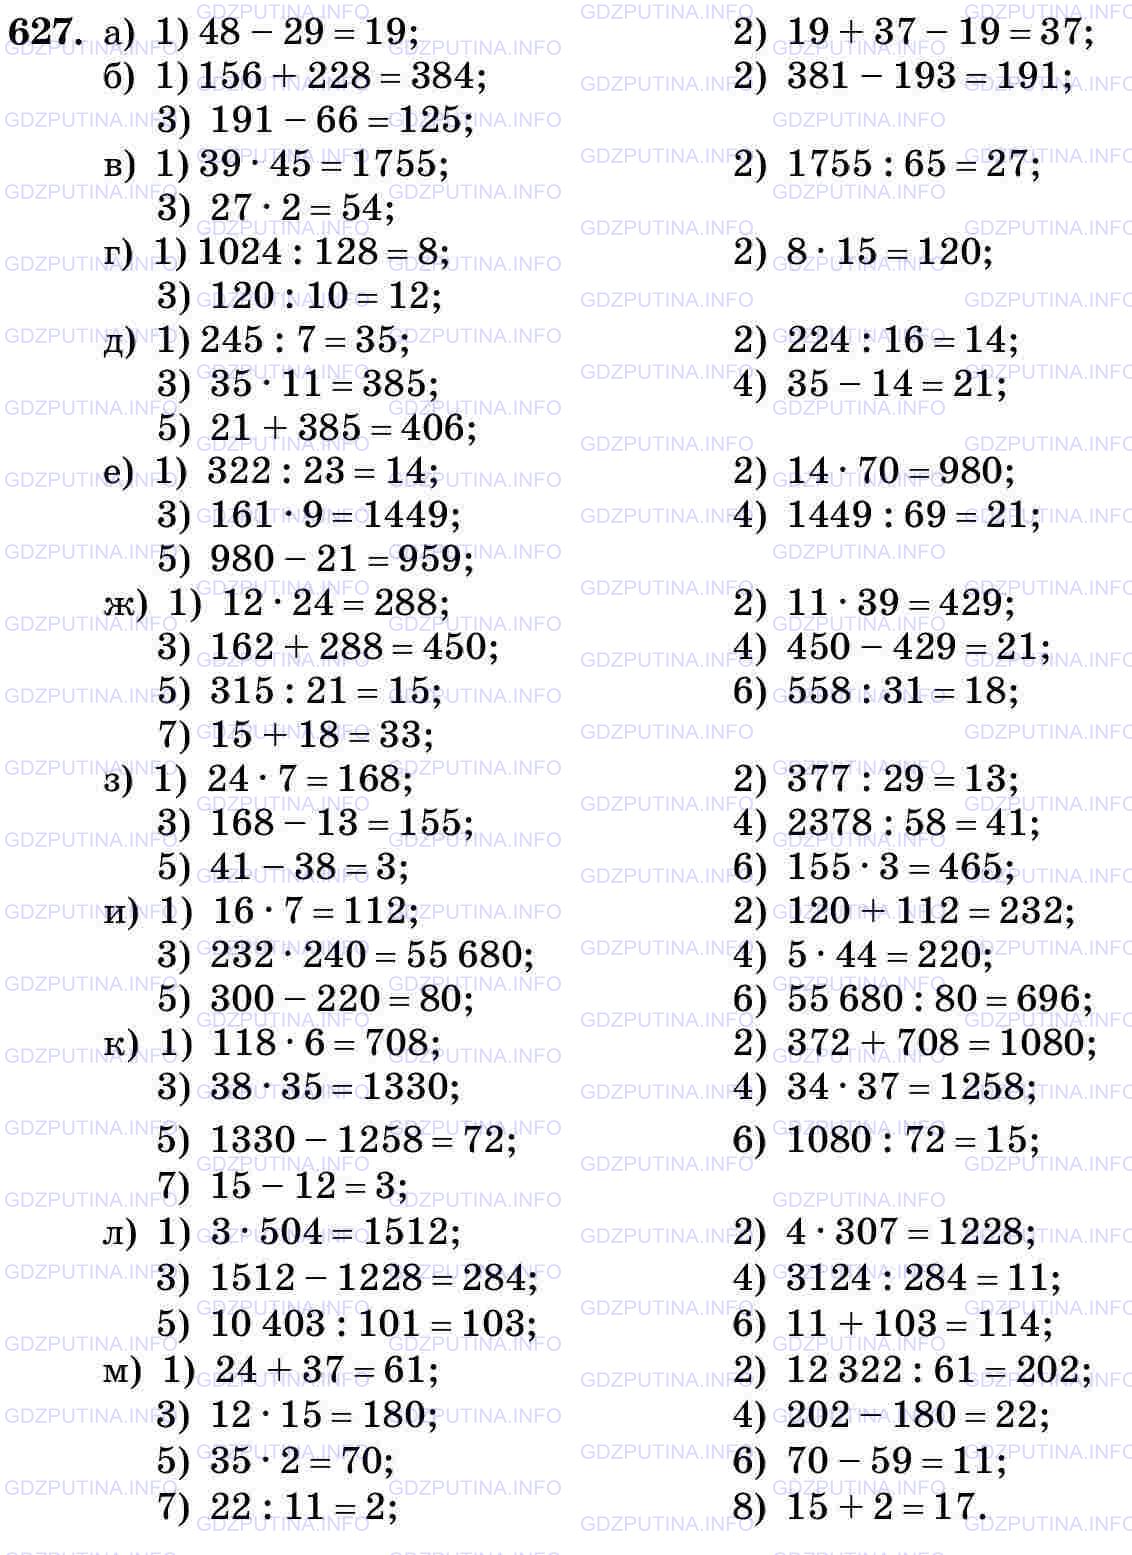 Фото картинка ответа 3: Задание № 627 из ГДЗ по Математике 5 класс: Виленкин